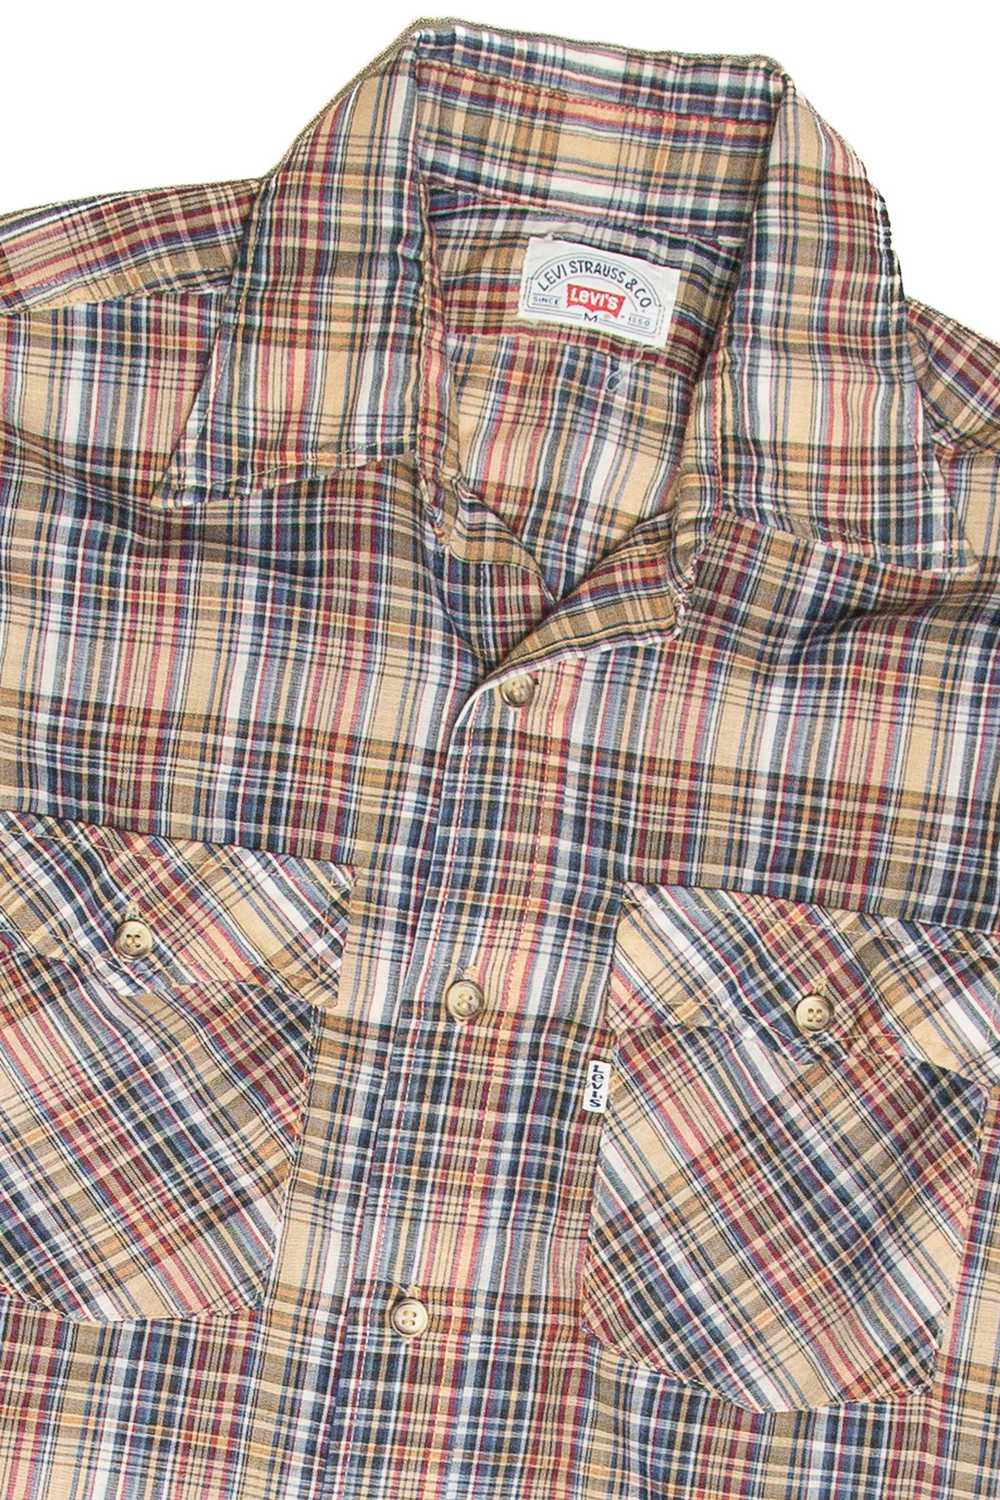 Vintage Levi's Button Up Shirt 1162 - image 2